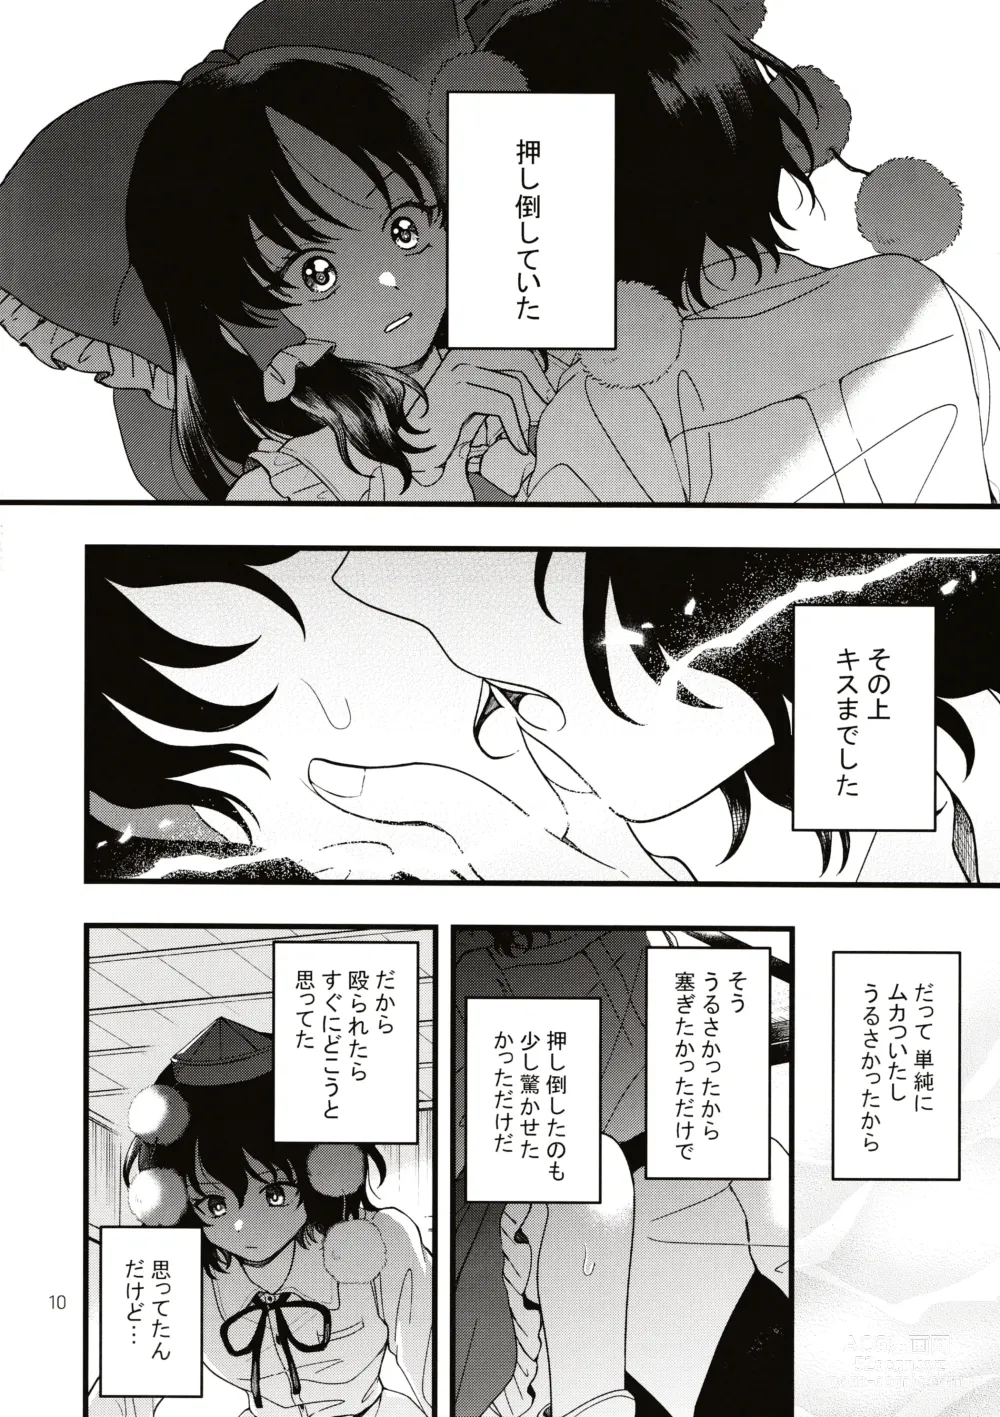 Page 9 of doujinshi Rubeus no Kankai